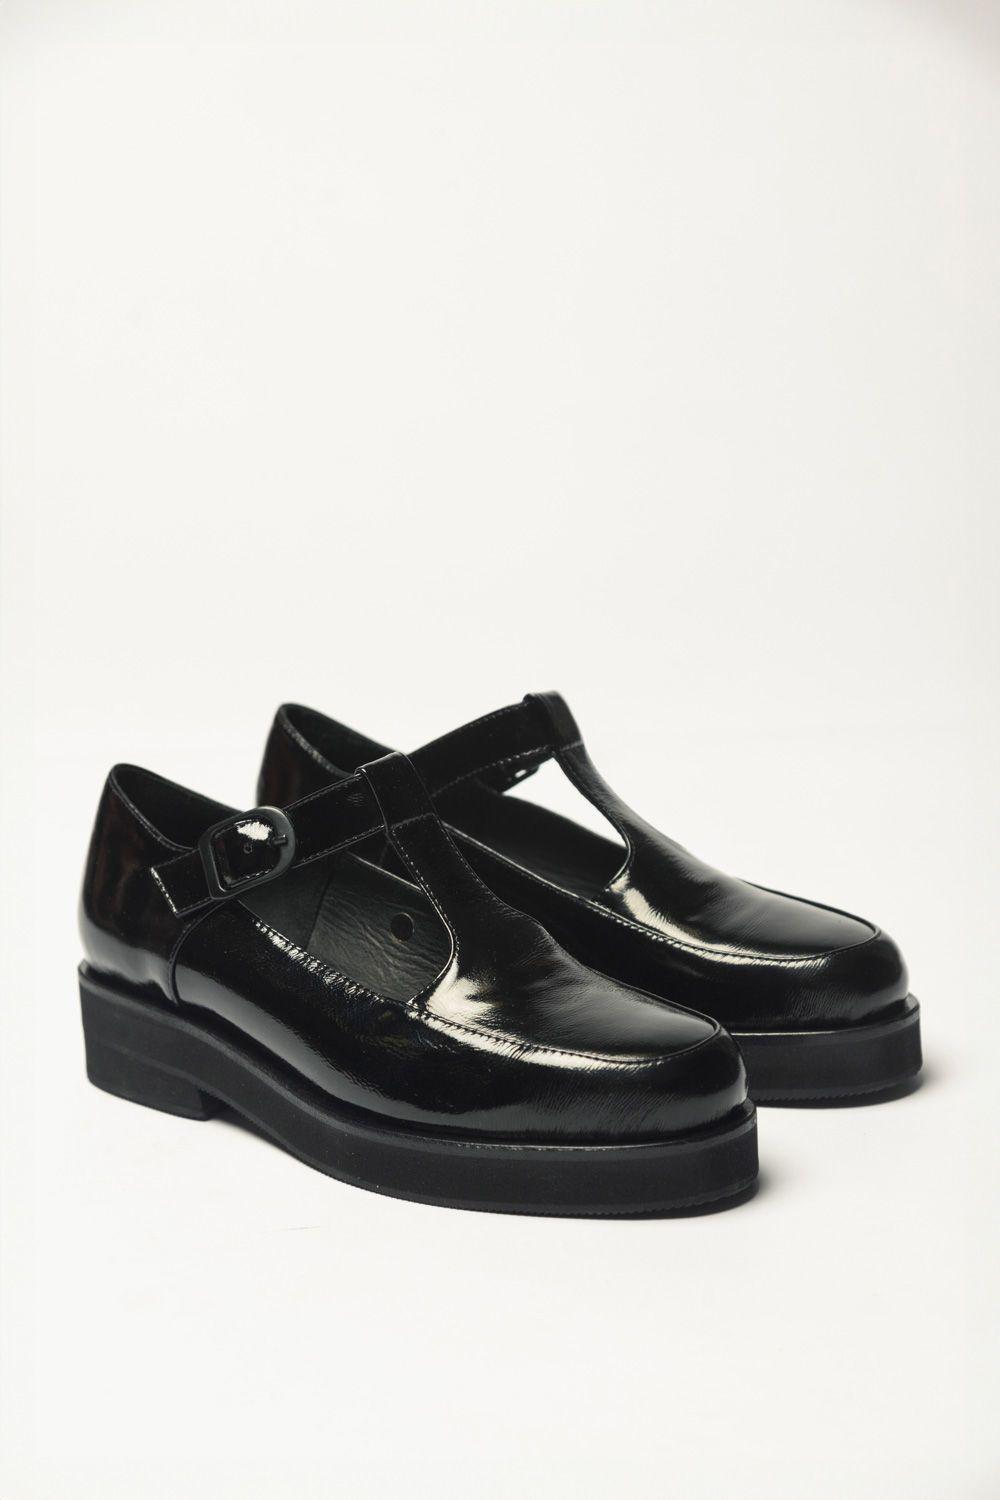 Zapato Guillermina Negro 35